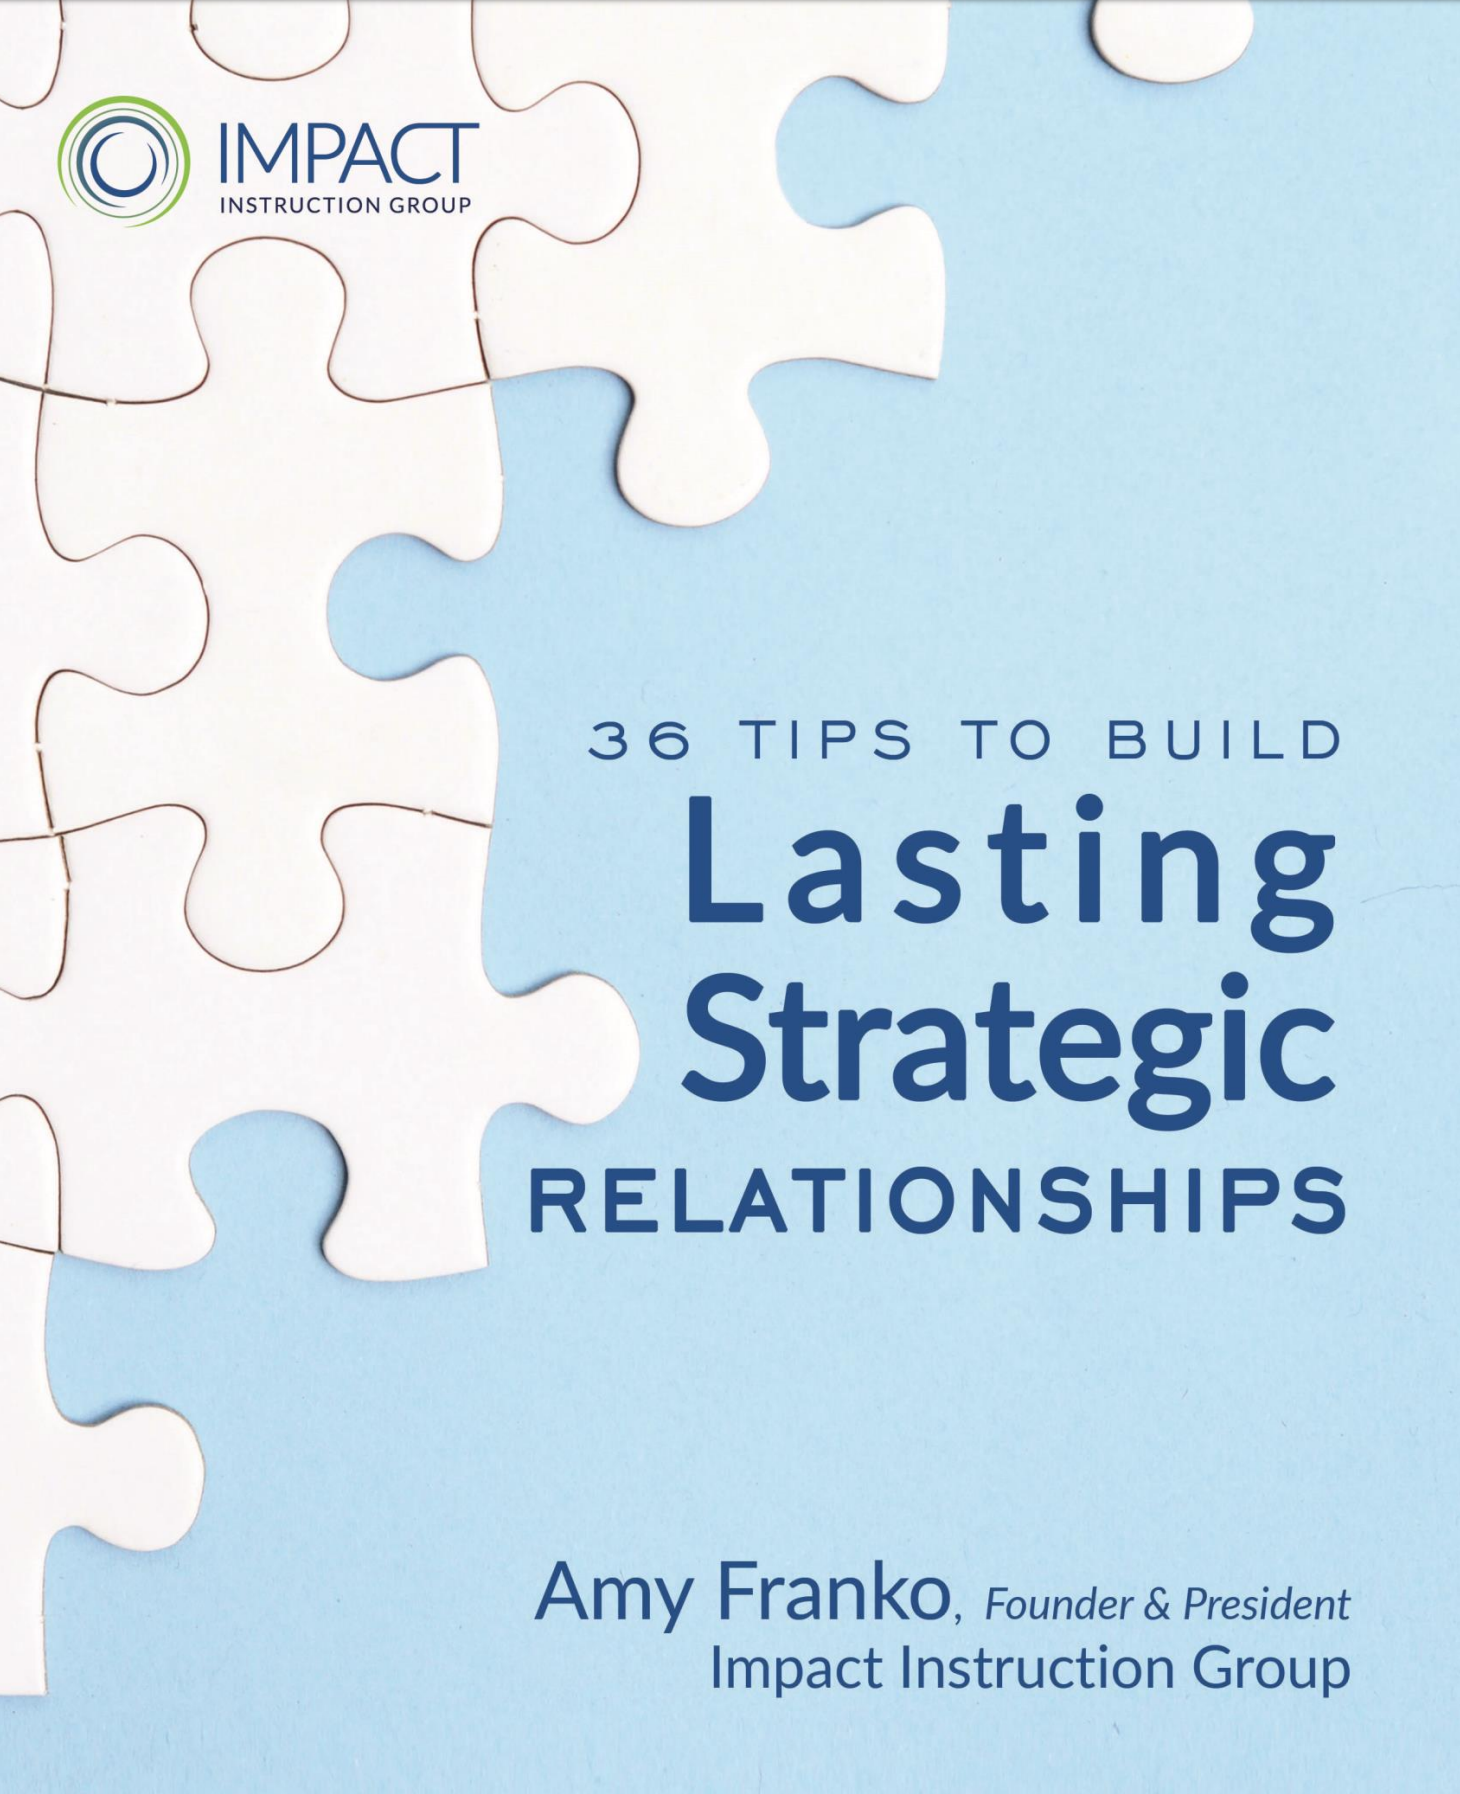 Strategic Relationship